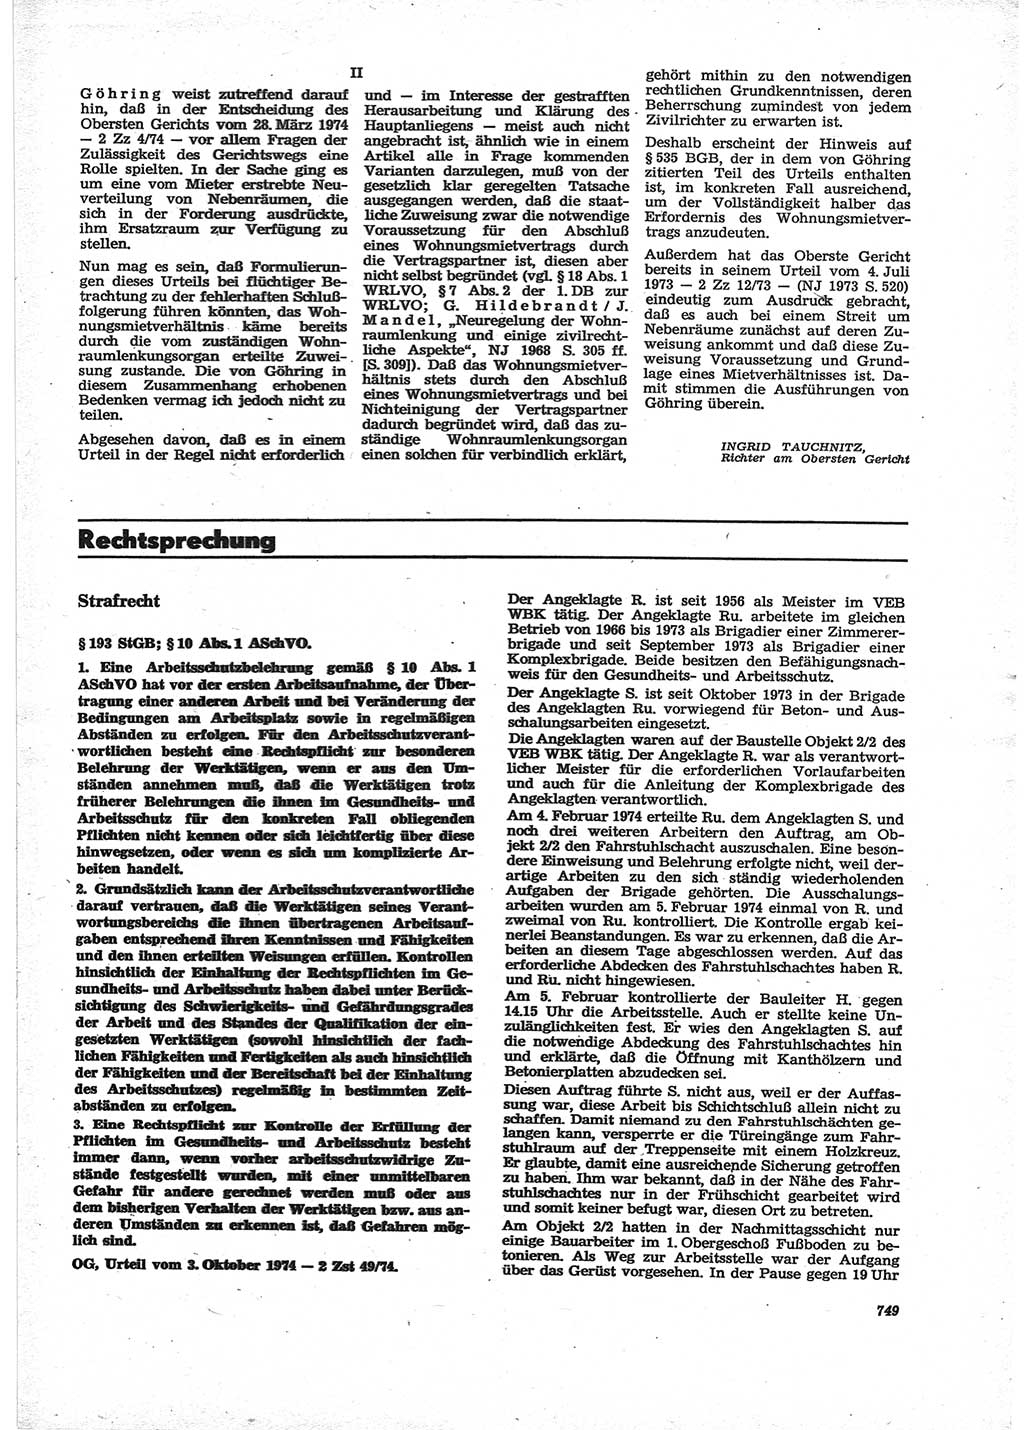 Neue Justiz (NJ), Zeitschrift für Recht und Rechtswissenschaft [Deutsche Demokratische Republik (DDR)], 28. Jahrgang 1974, Seite 749 (NJ DDR 1974, S. 749)